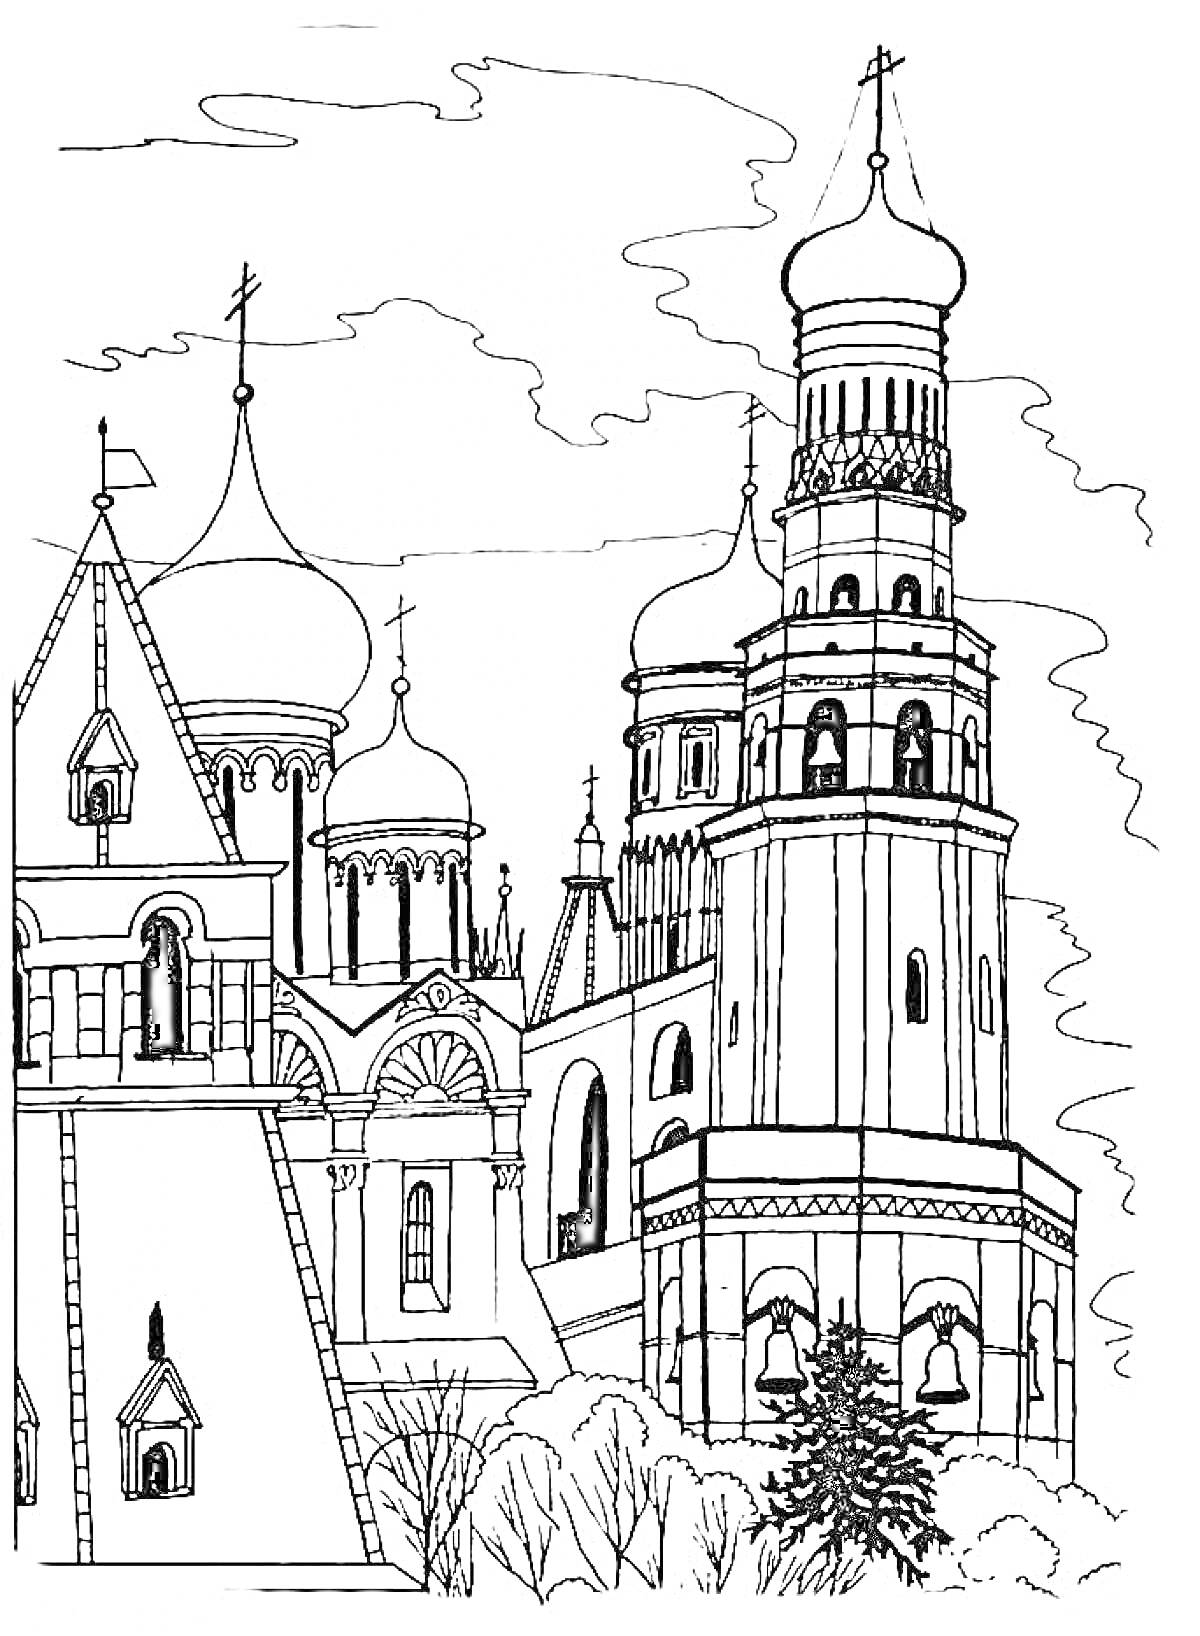 Архитектурные памятники Москвы, соборы и башни российской столицы